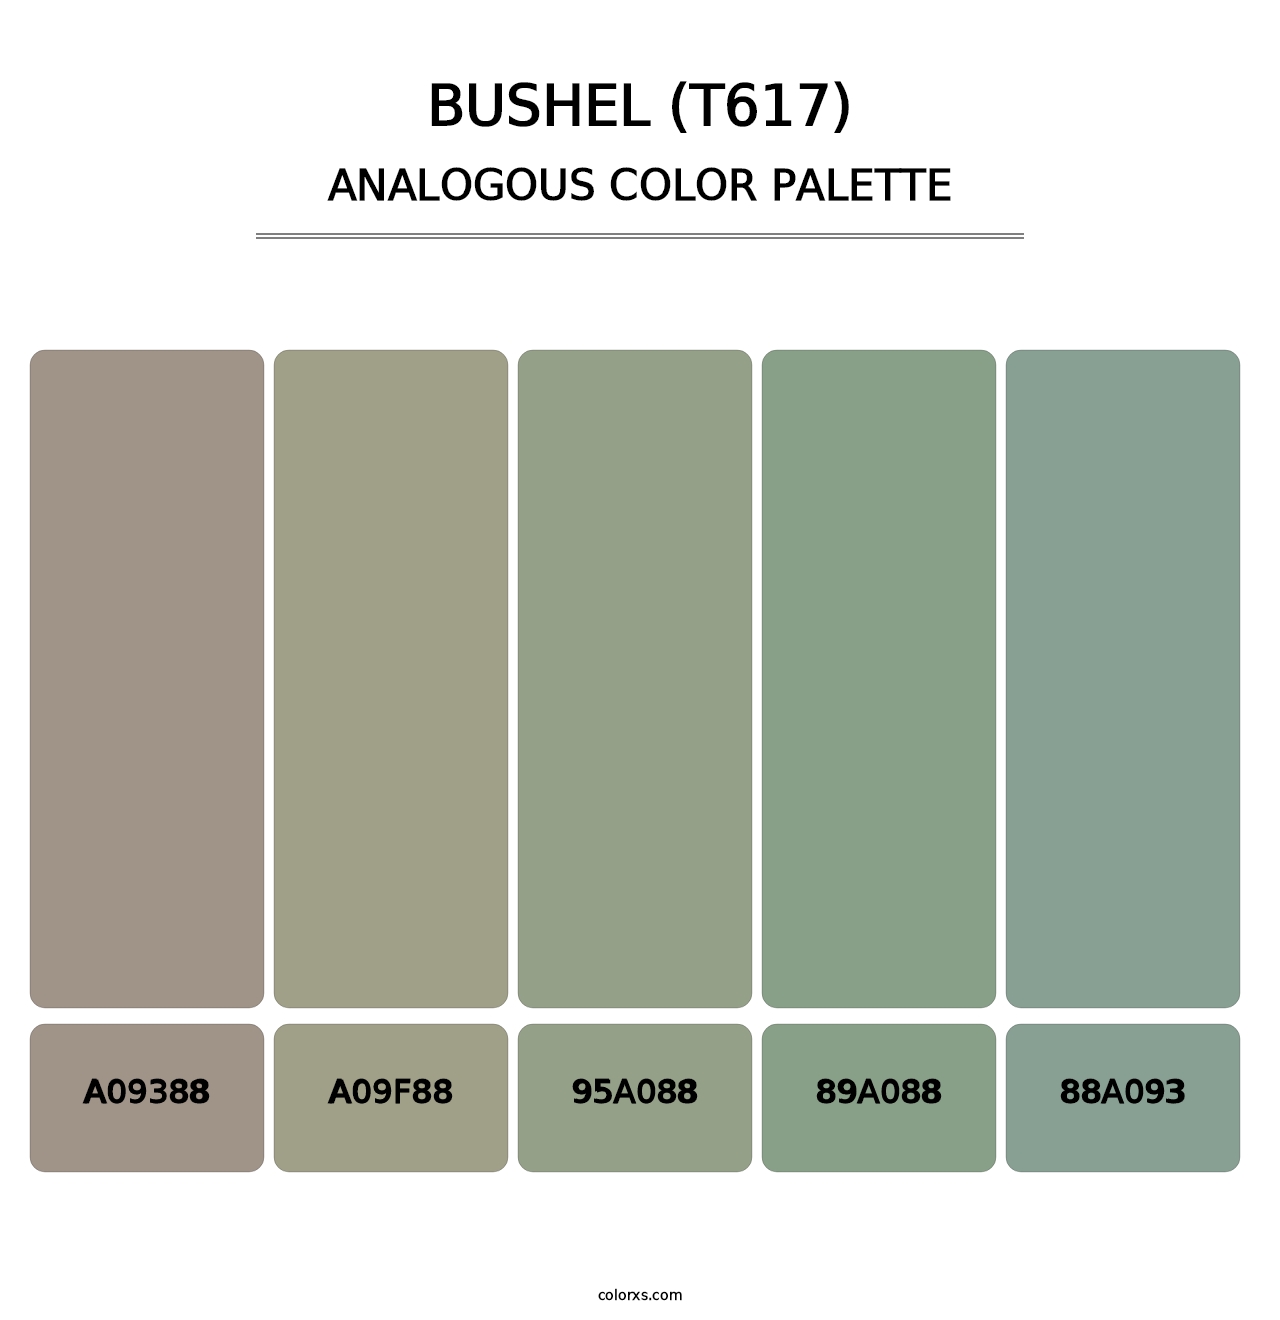 Bushel (T617) - Analogous Color Palette